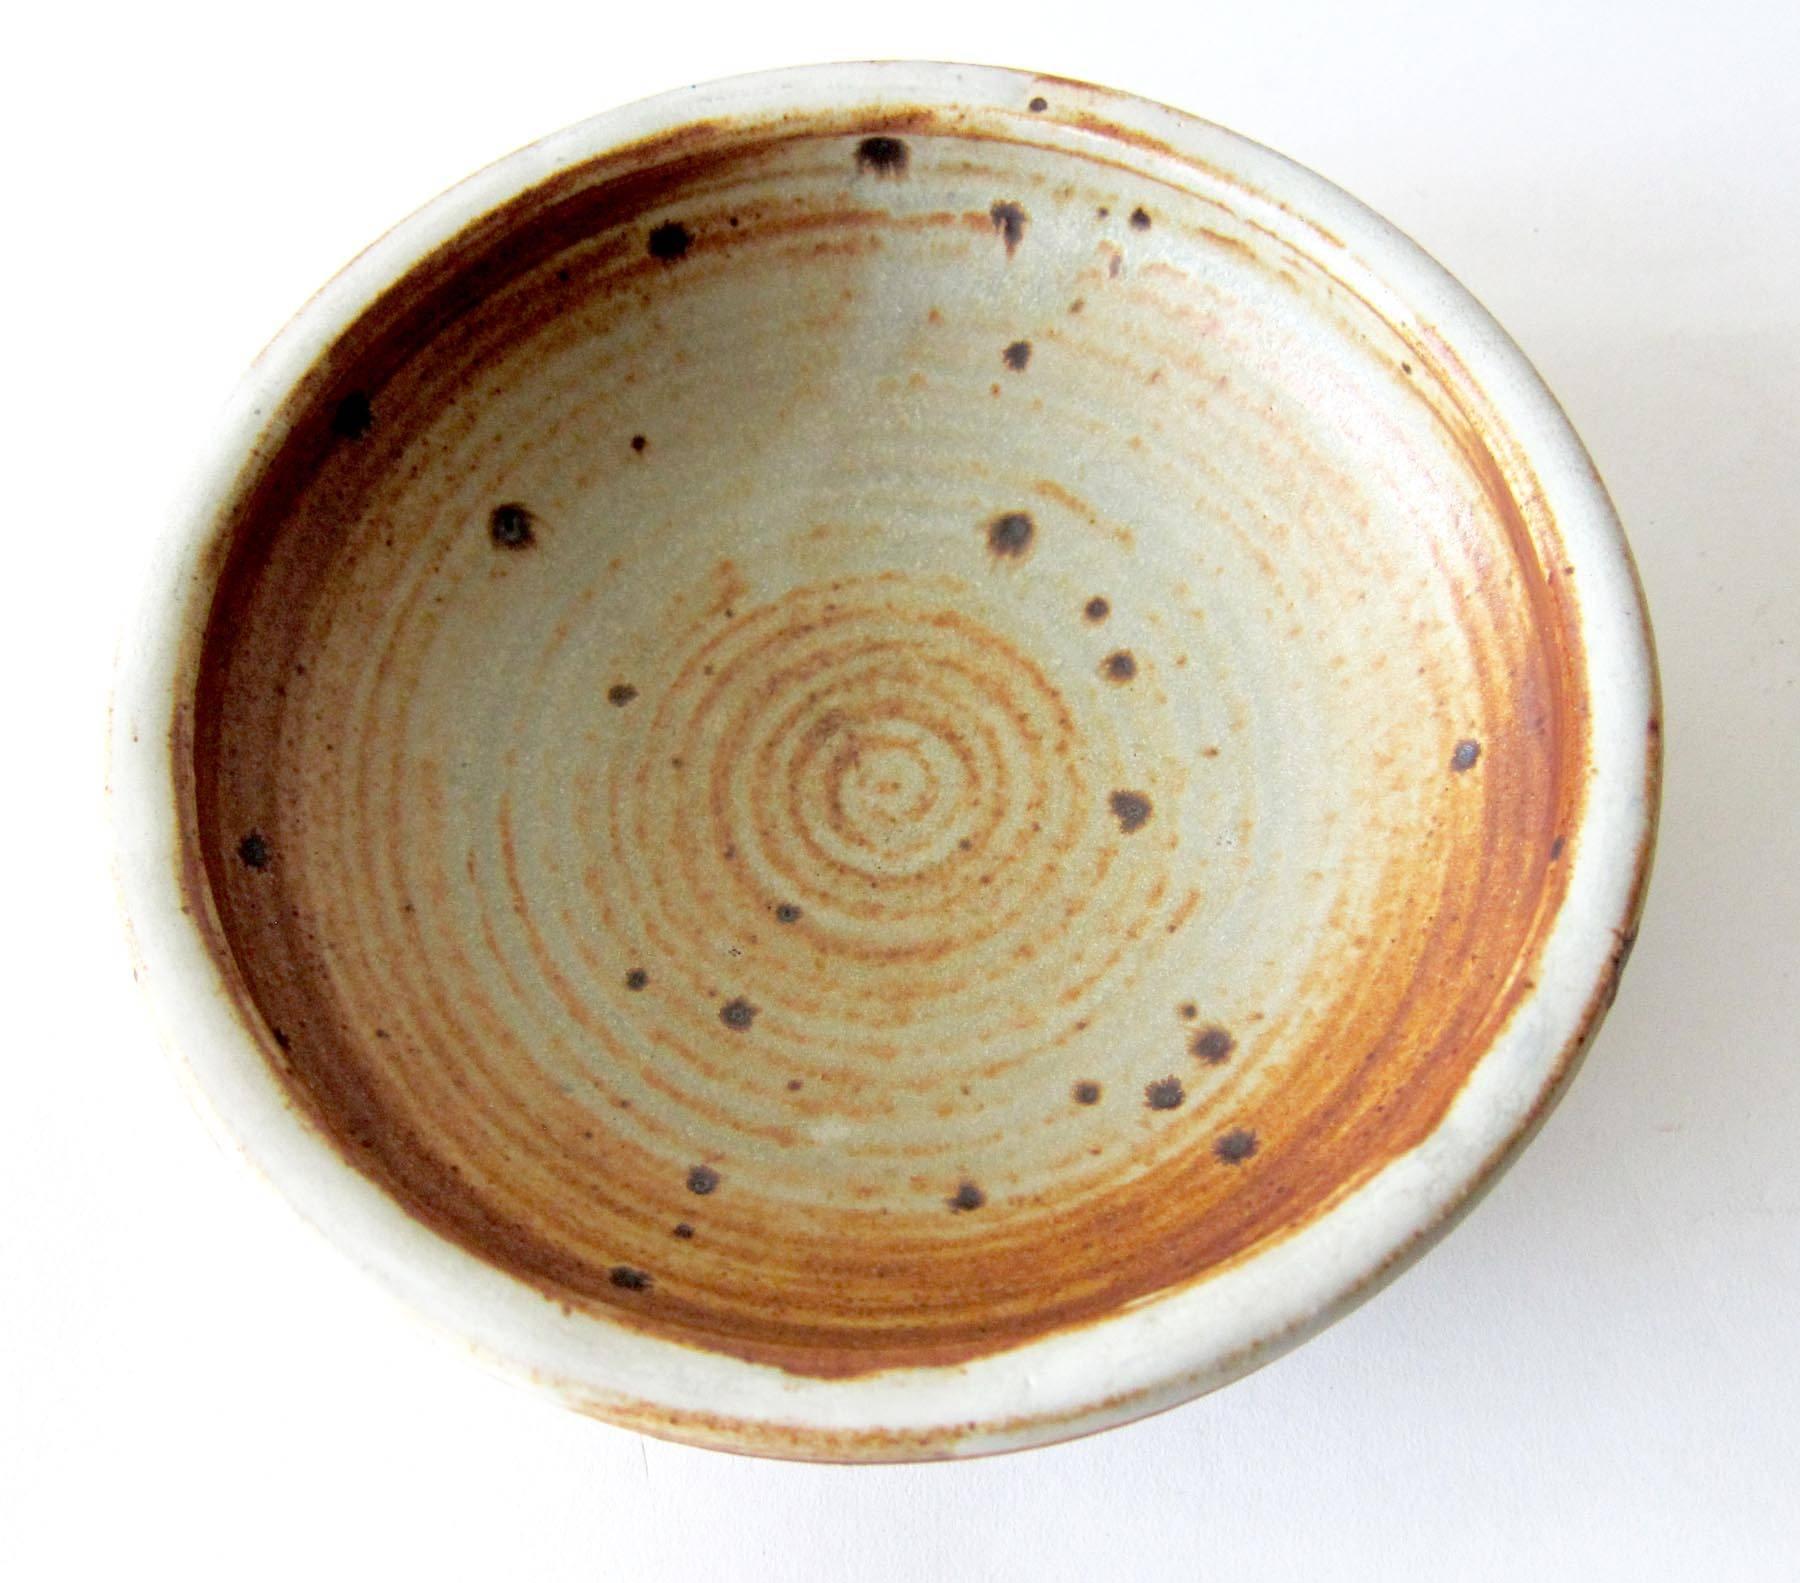 Glazed stoneware bowl by Otto and Vivika Heino of Ojai, California. Bowl measures 2.5